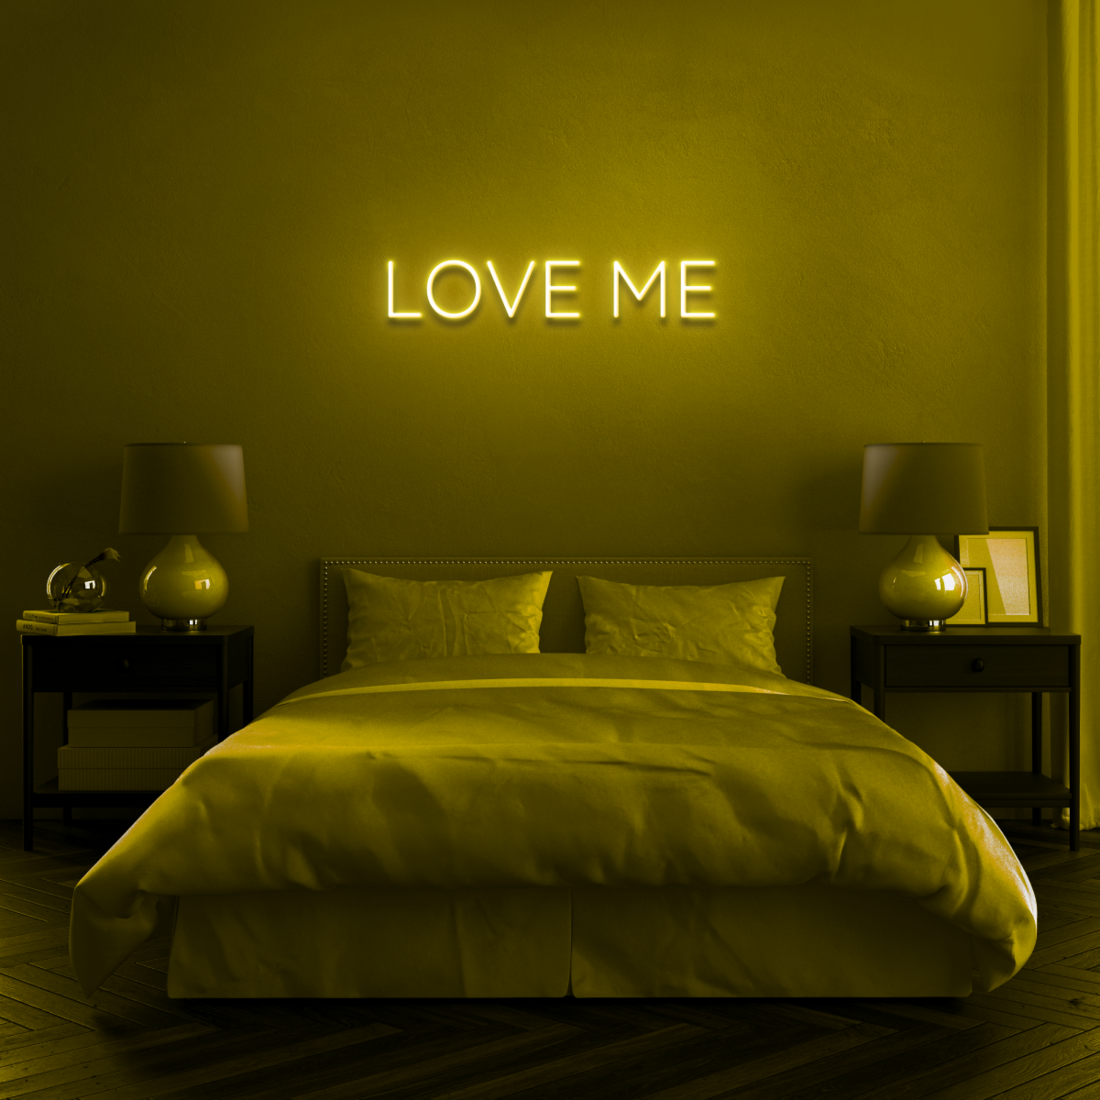 "LOVE ME" - NEONIDAS NEONSCHILD LED-SCHILD